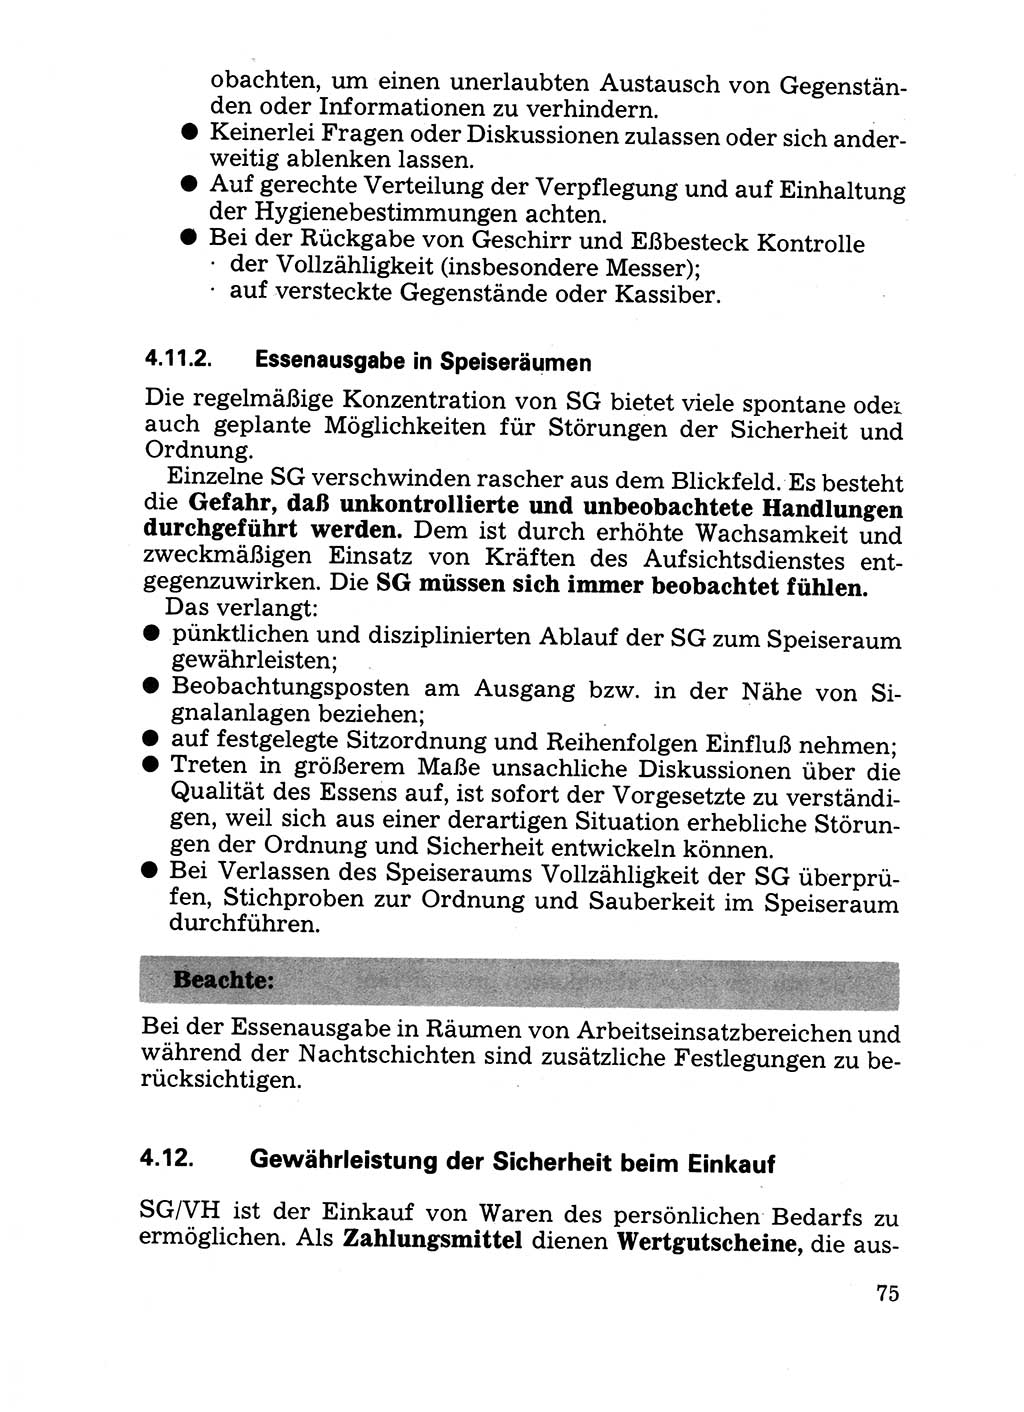 Handbuch für operative Dienste, Abteilung Strafvollzug (SV) [Ministerium des Innern (MdI) Deutsche Demokratische Republik (DDR)] 1981, Seite 75 (Hb. op. D. Abt. SV MdI DDR 1981, S. 75)